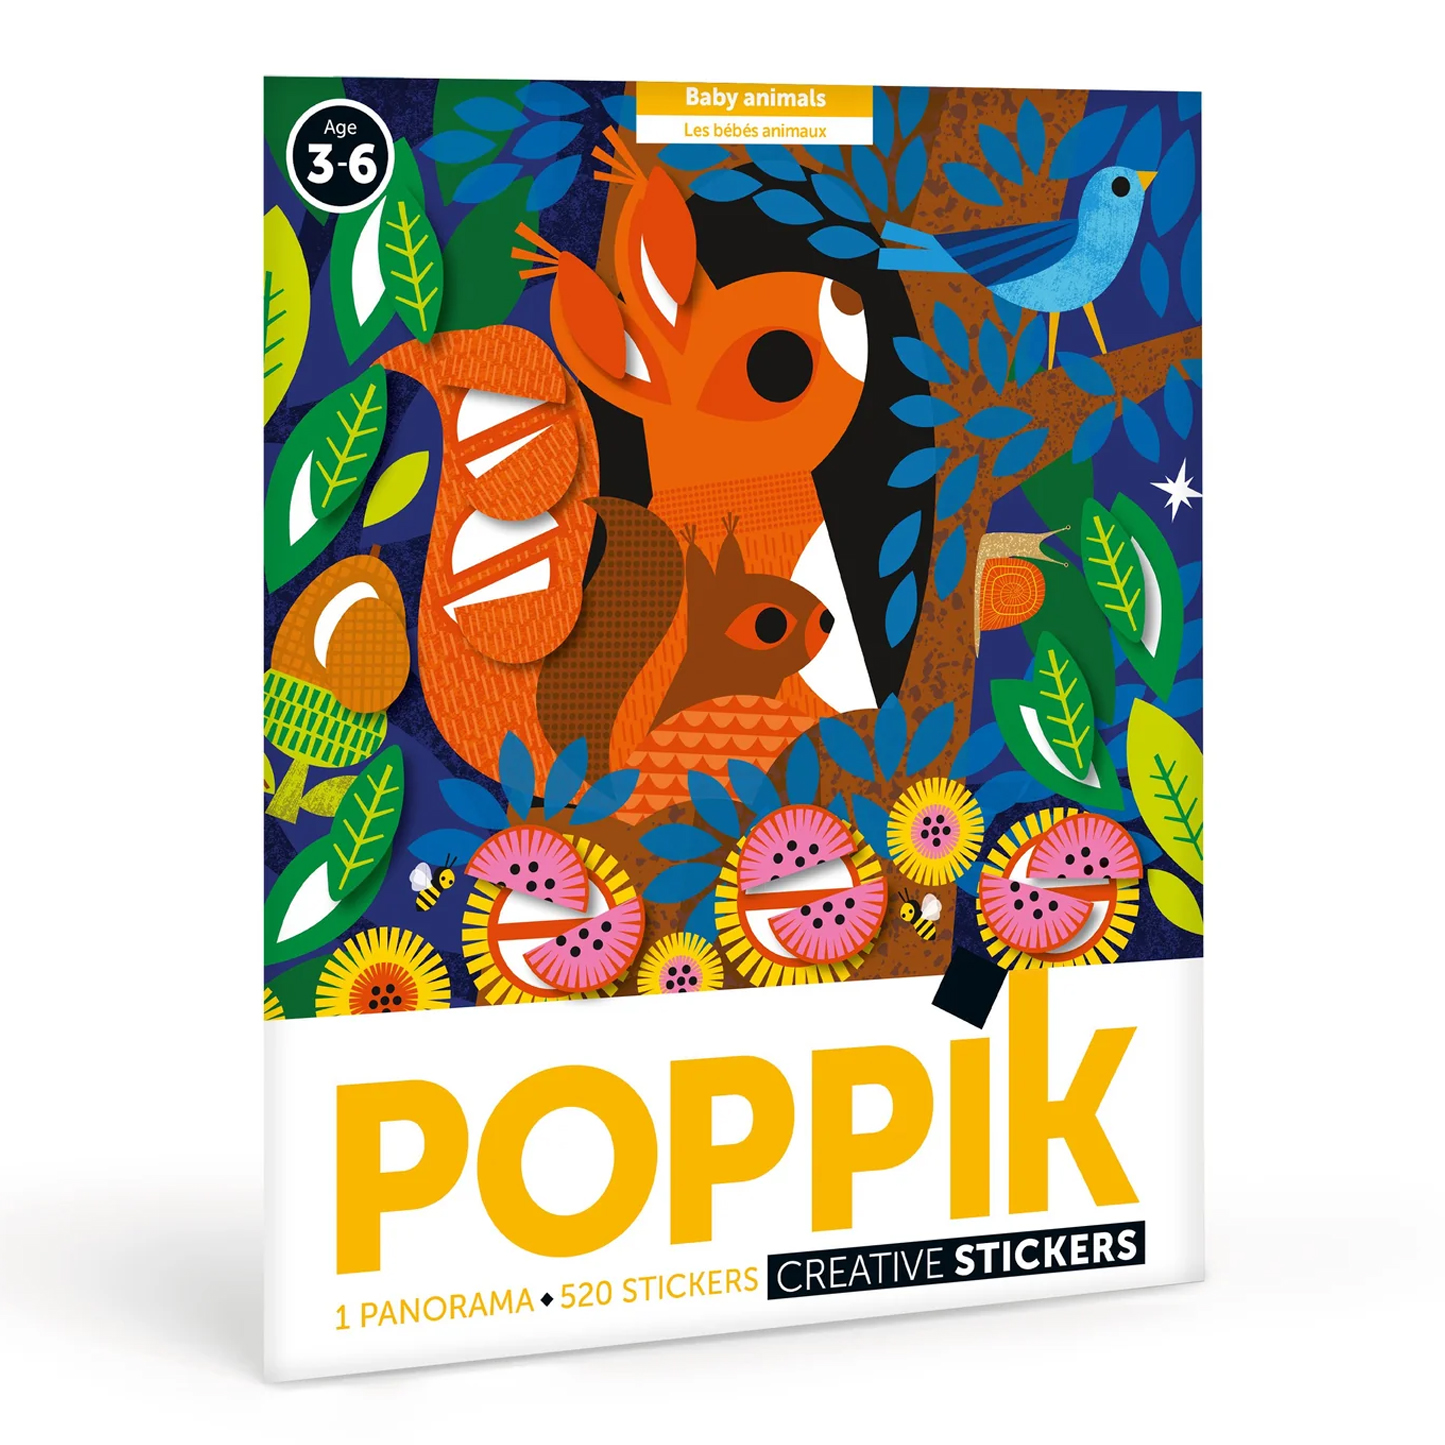  Poppik Panorama Sticker Poster - Baby Animals